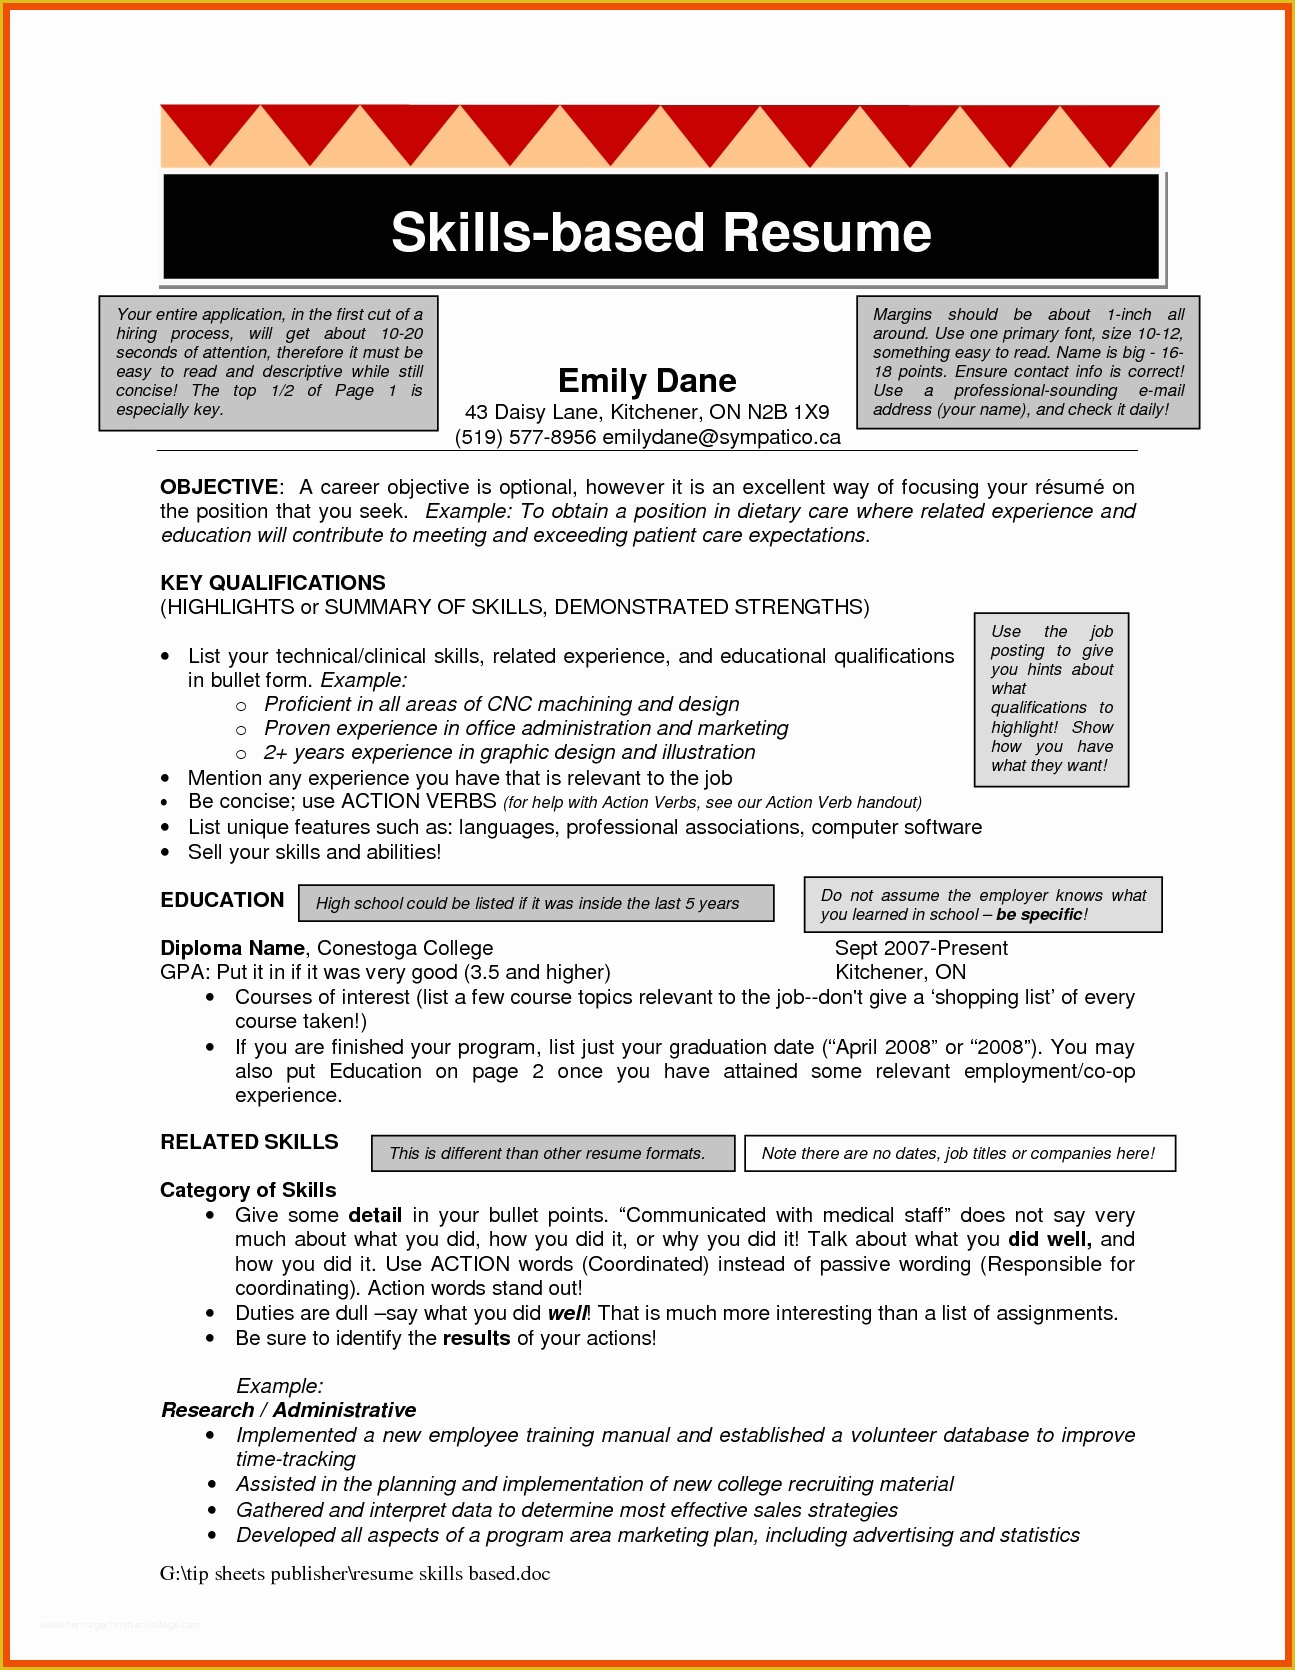 Skills Based Resume Template Free Of 7 8 Skills Based Resume